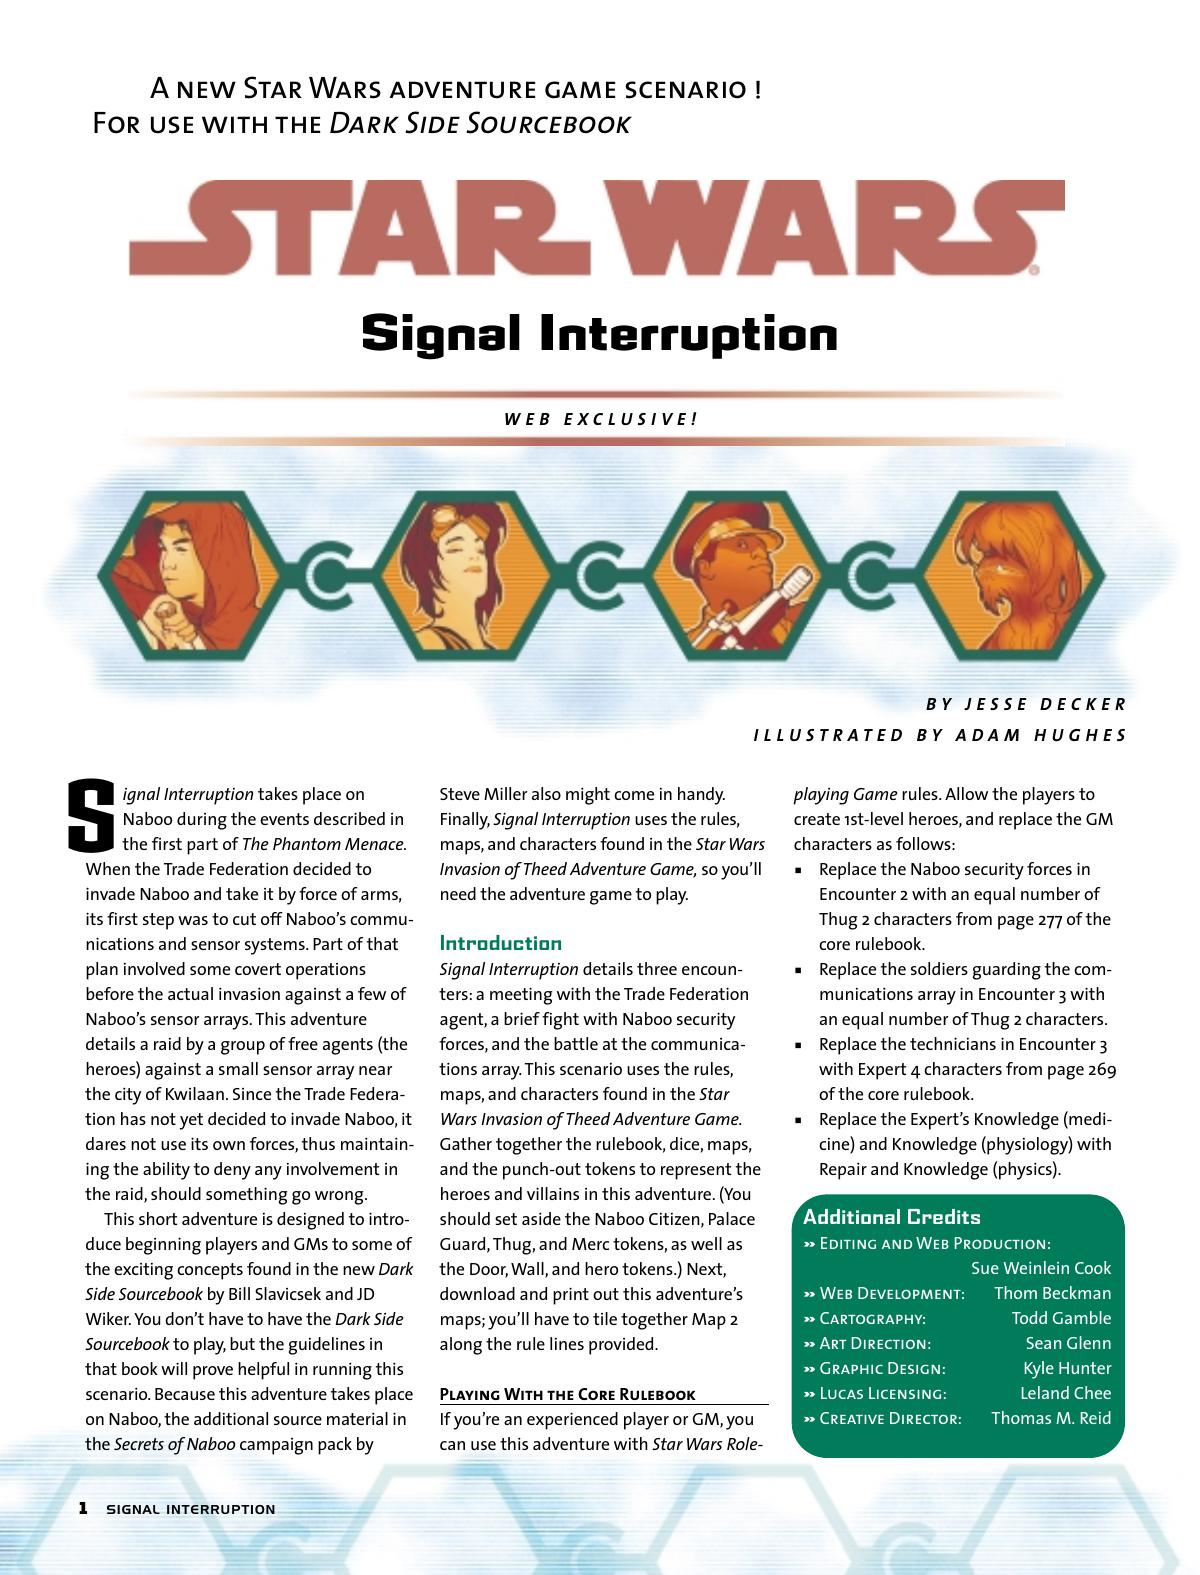 Signal Interruption